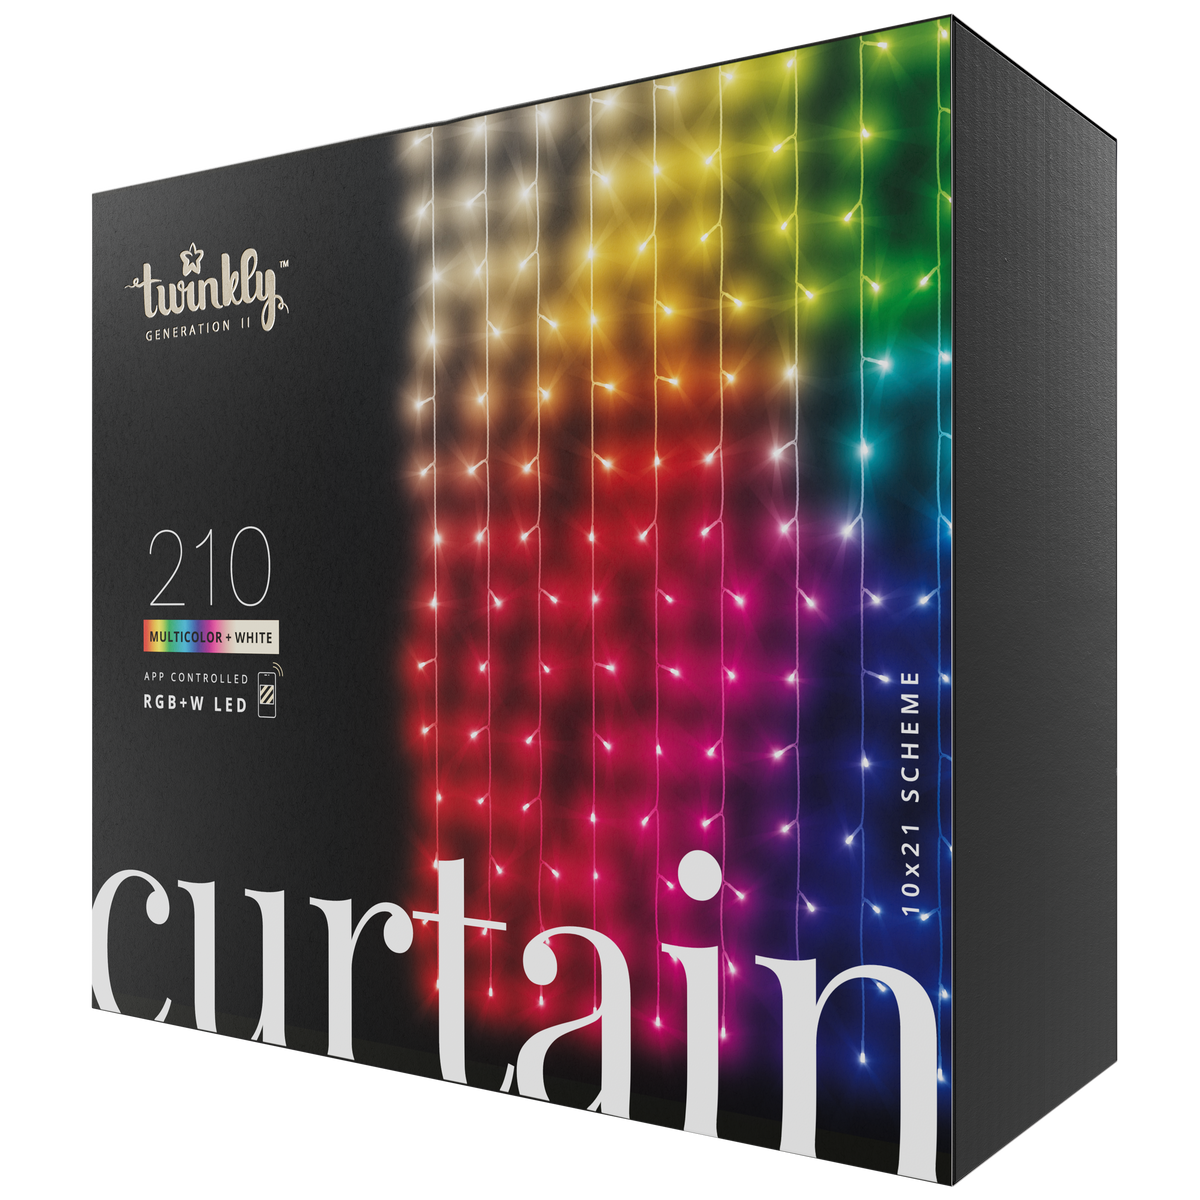 Curtain (flerfärgad + vit utgåva)